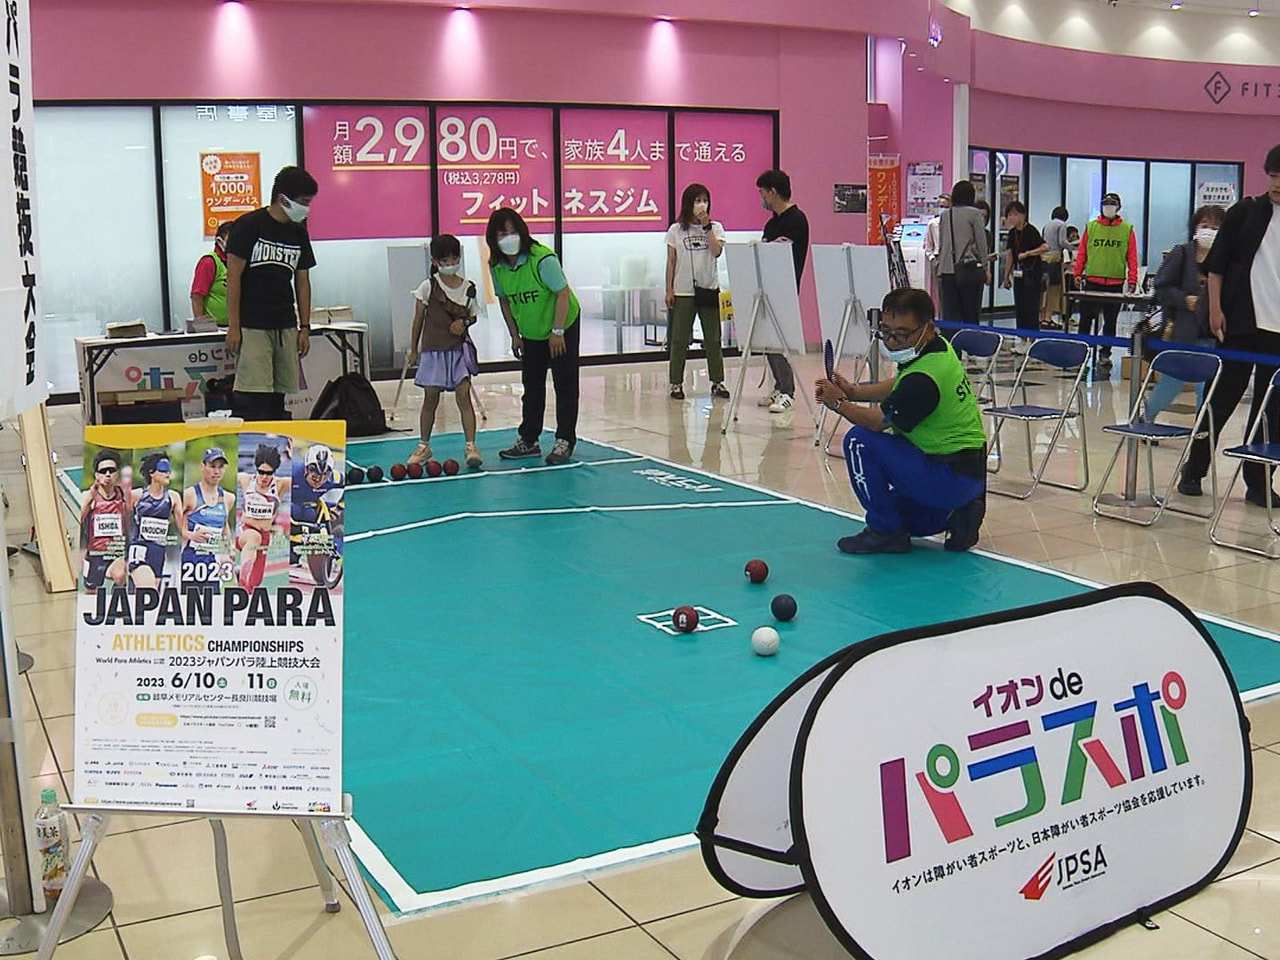 パラスポーツの魅力を伝えようと３日、大垣市の商業施設で交流イベントが開かれました...